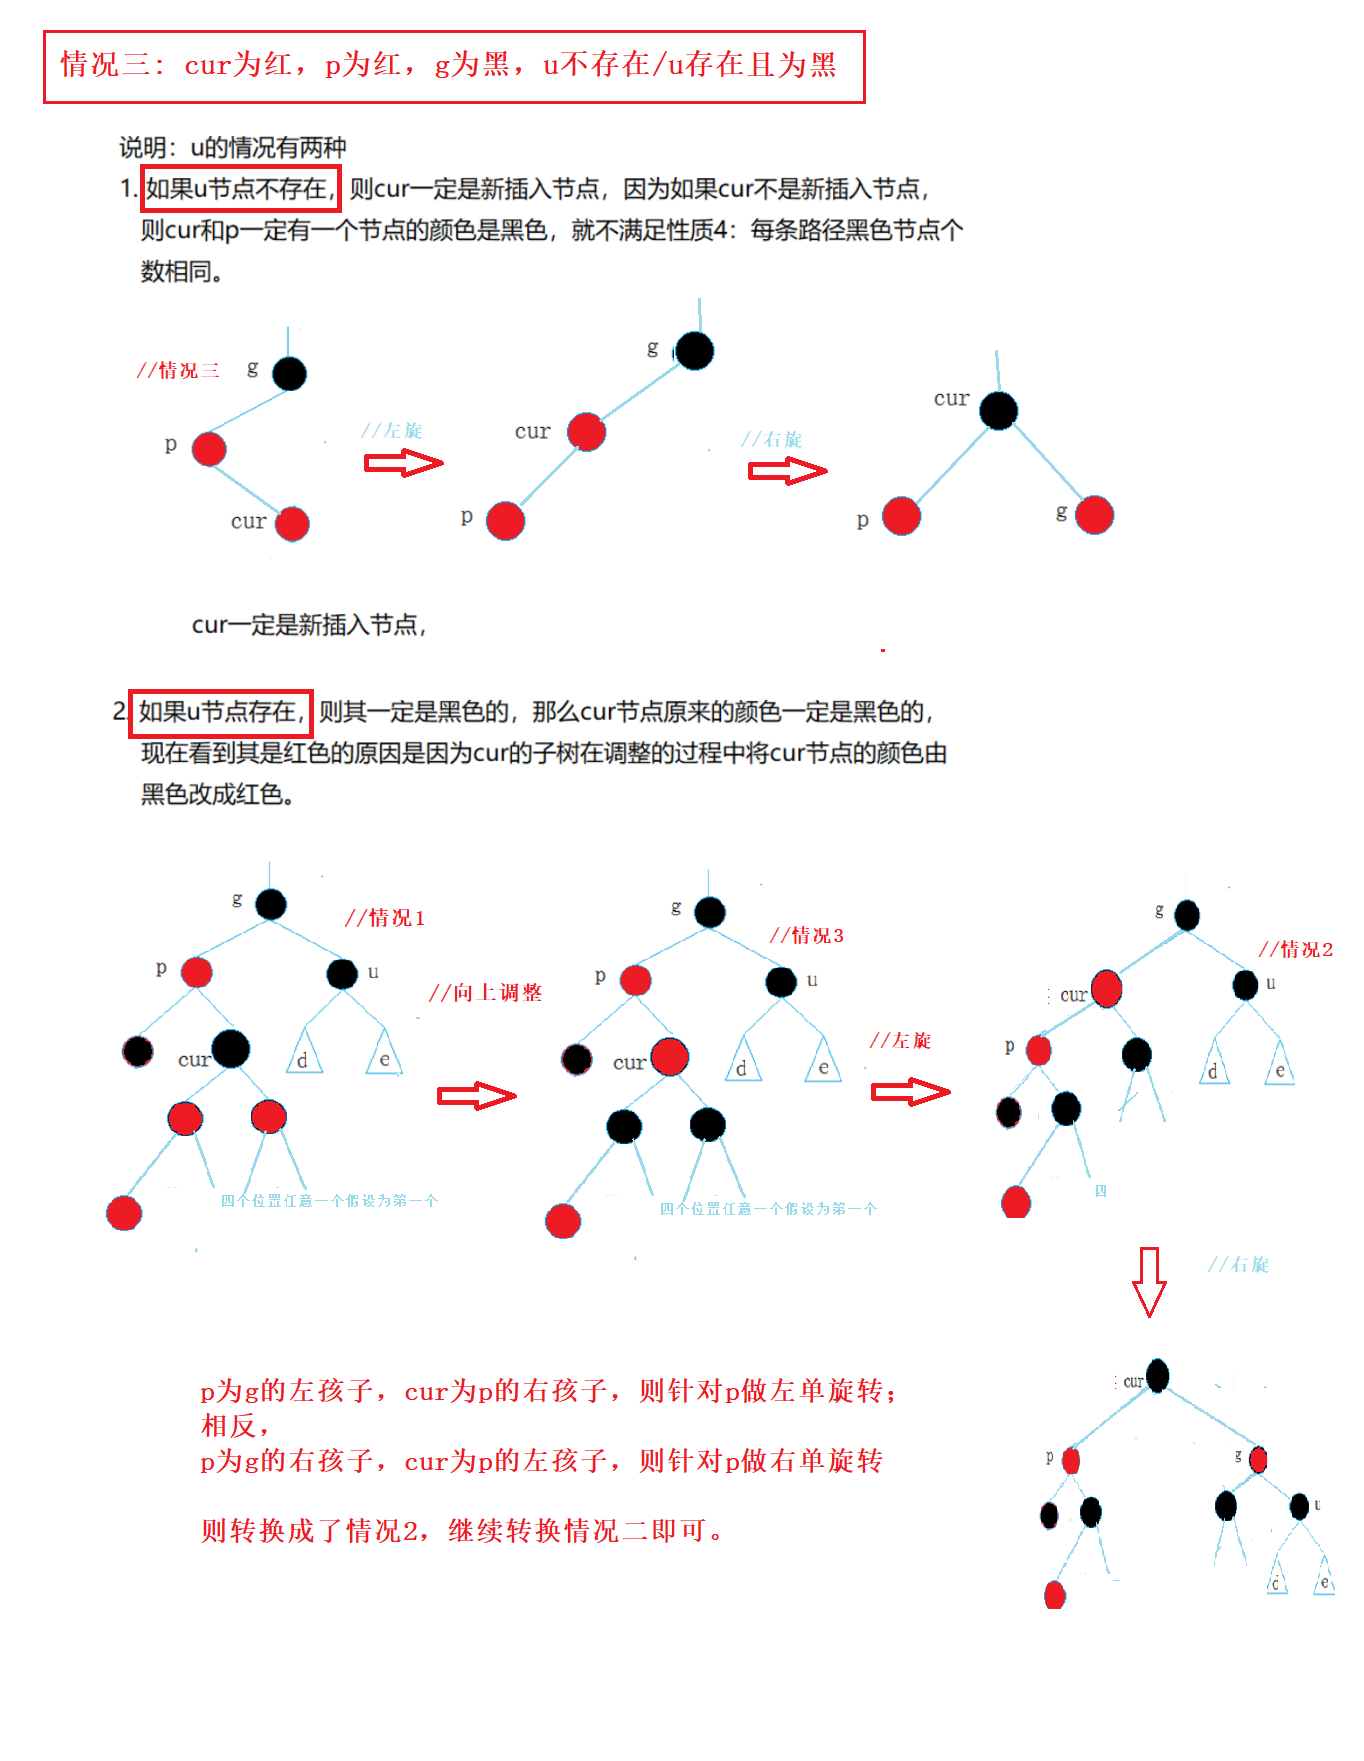 【数据结构】AVL树/红黑树